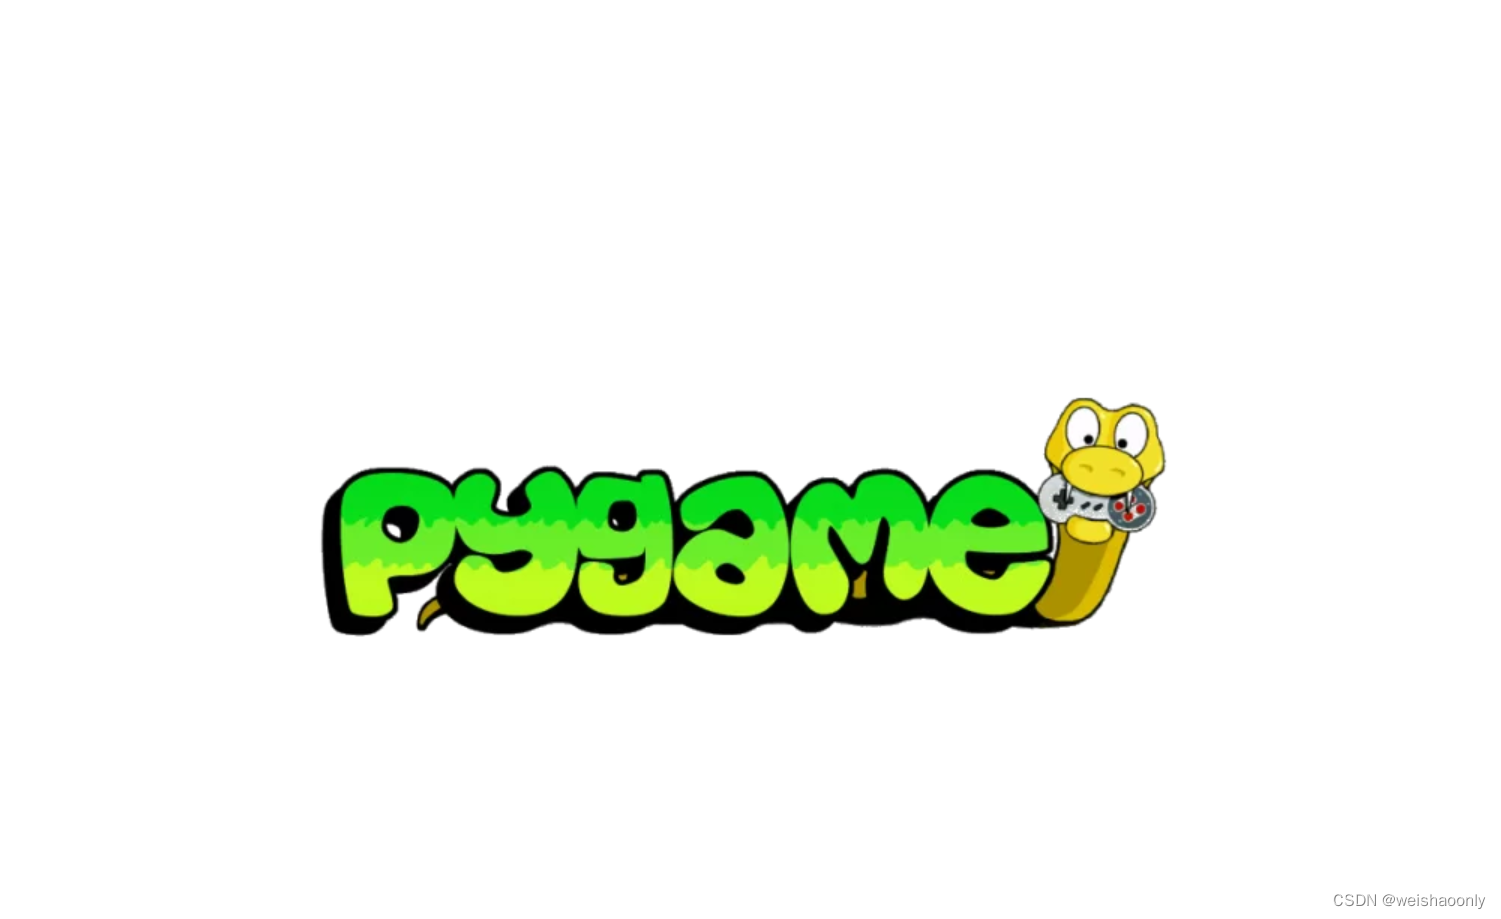 【Python pygame】零基础也能轻松掌握的学习路线与参考资料